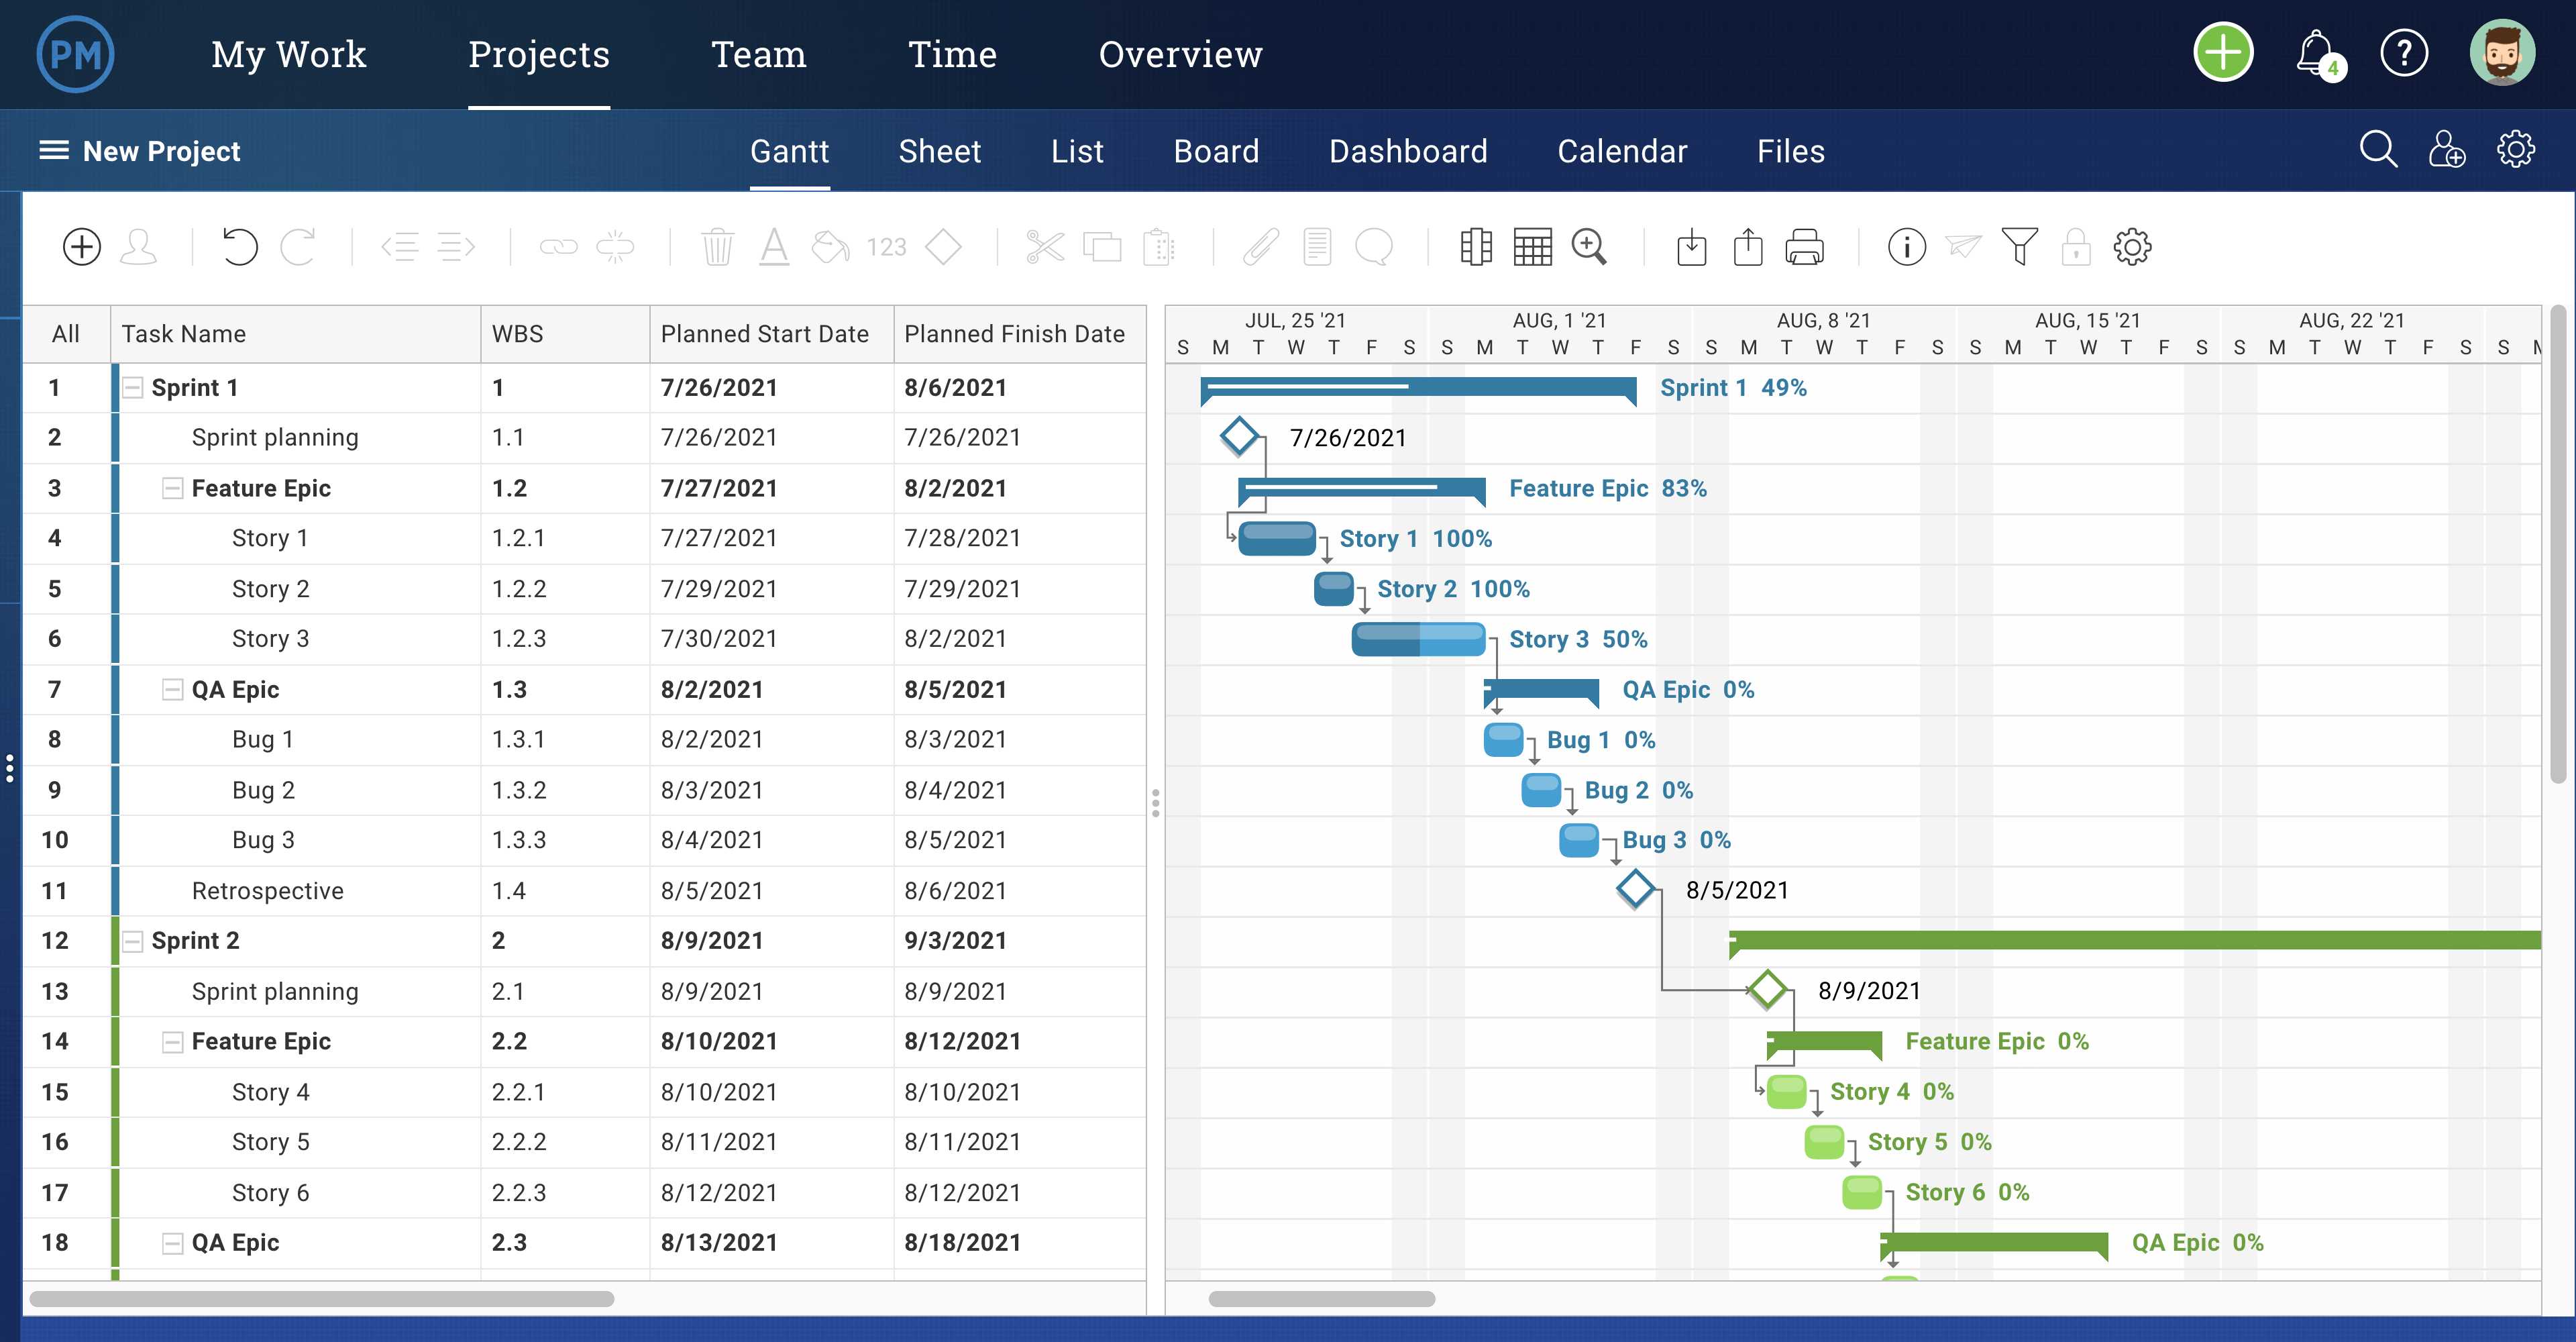 ProjectManager's Gantt chart view